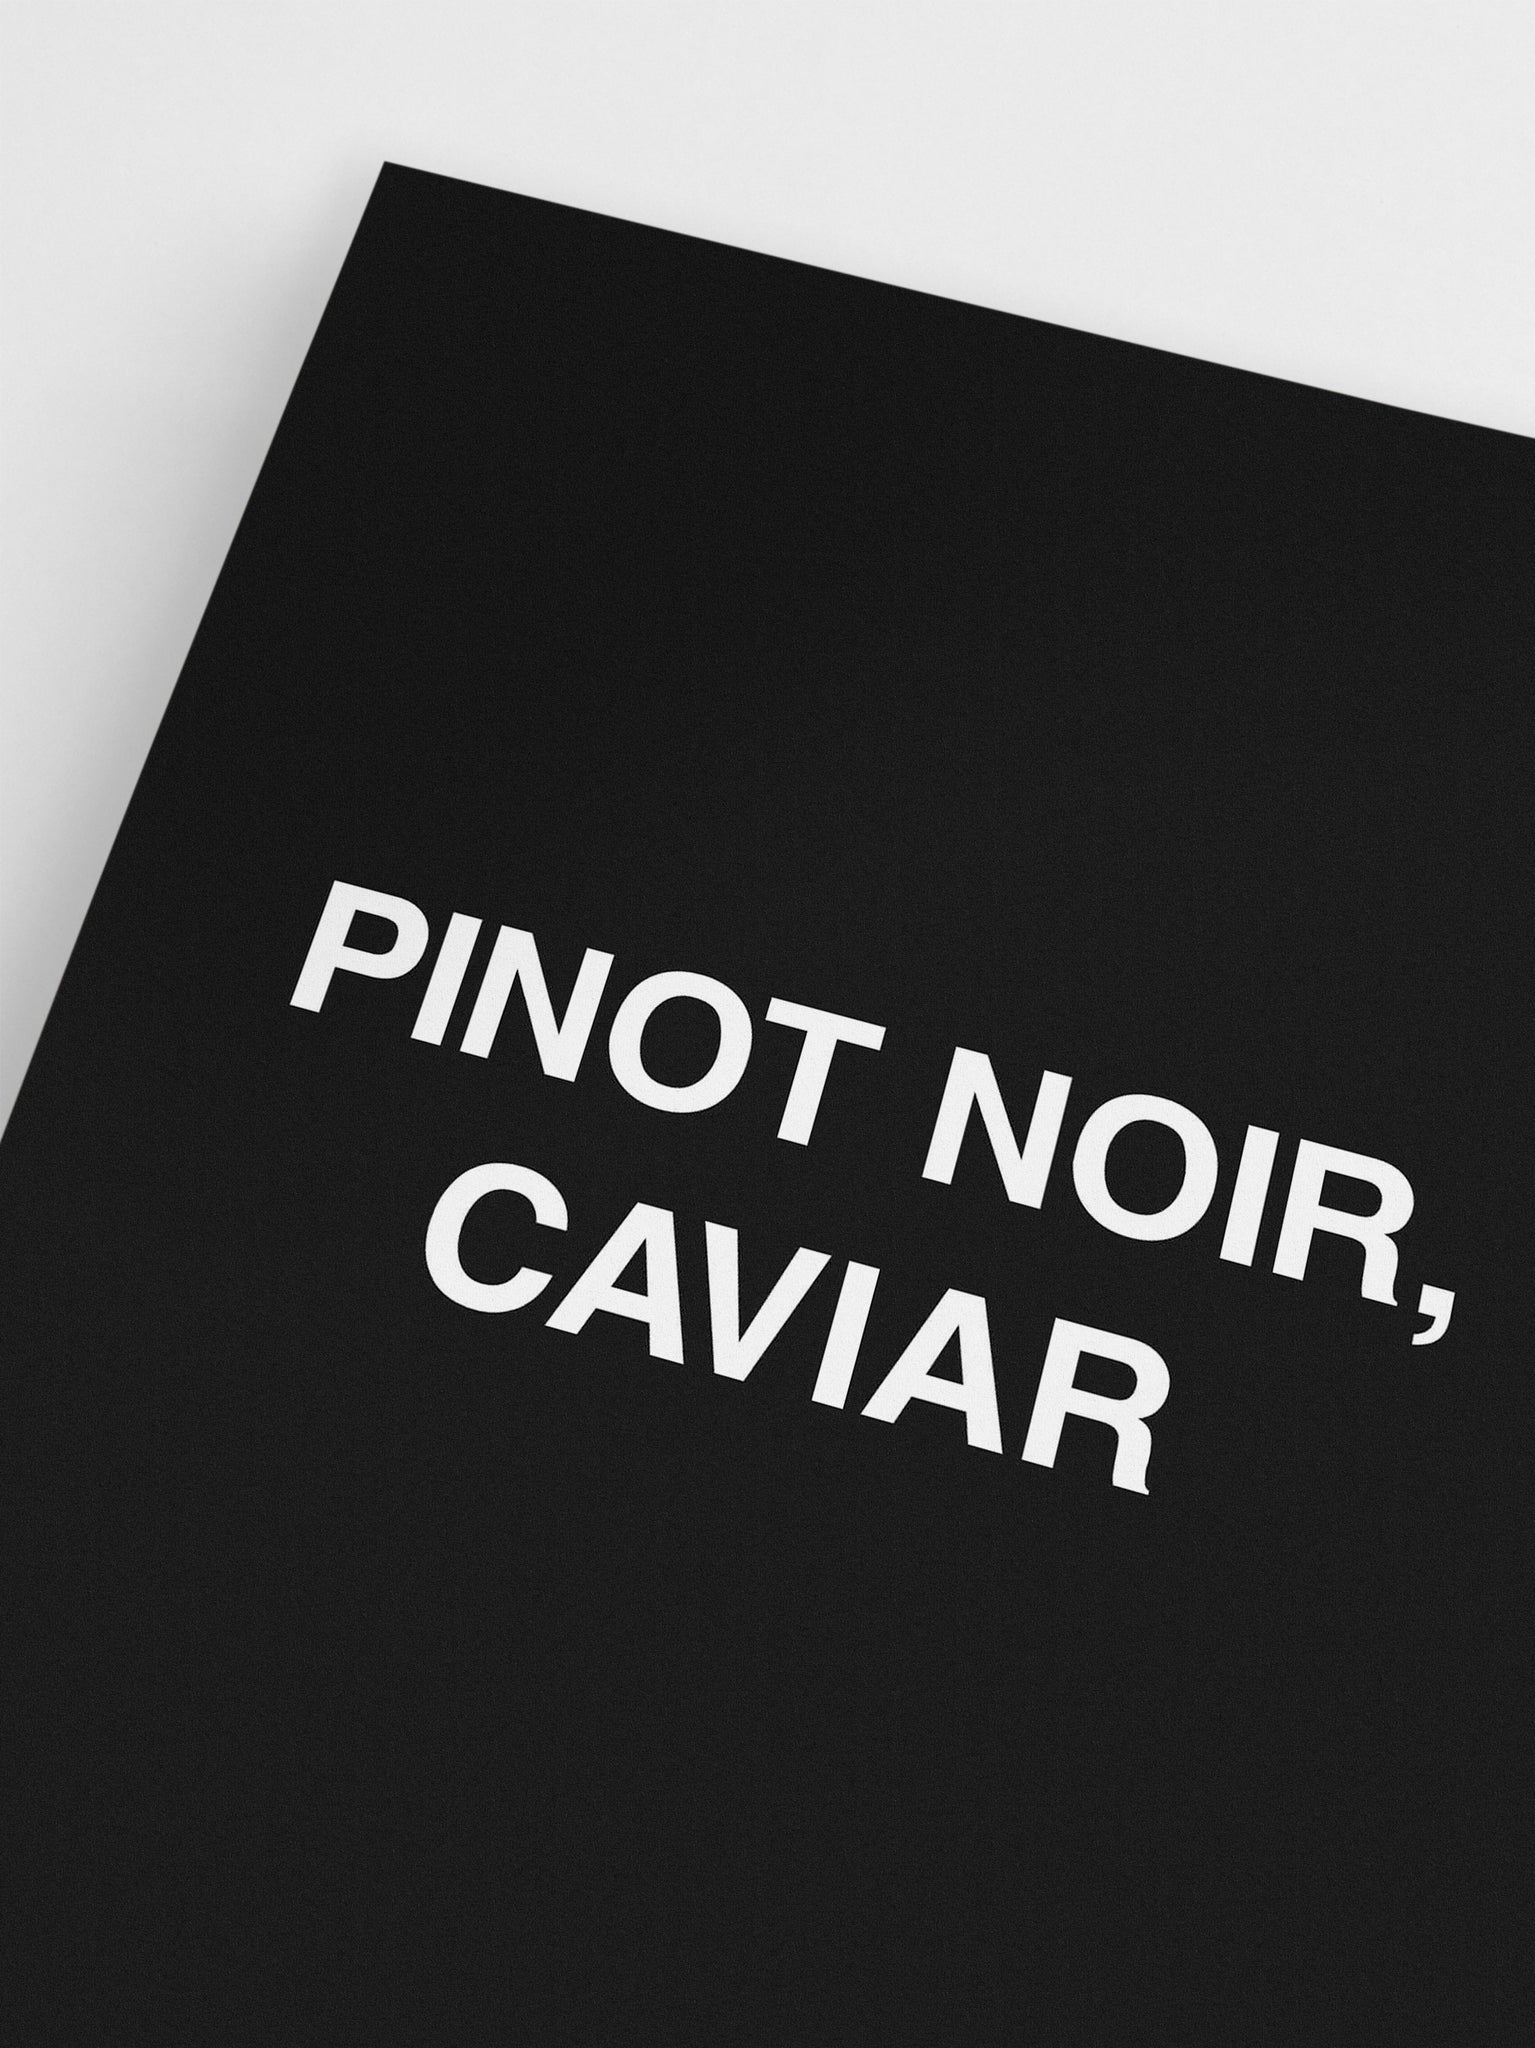 Pinot Noir, Caviar wall art